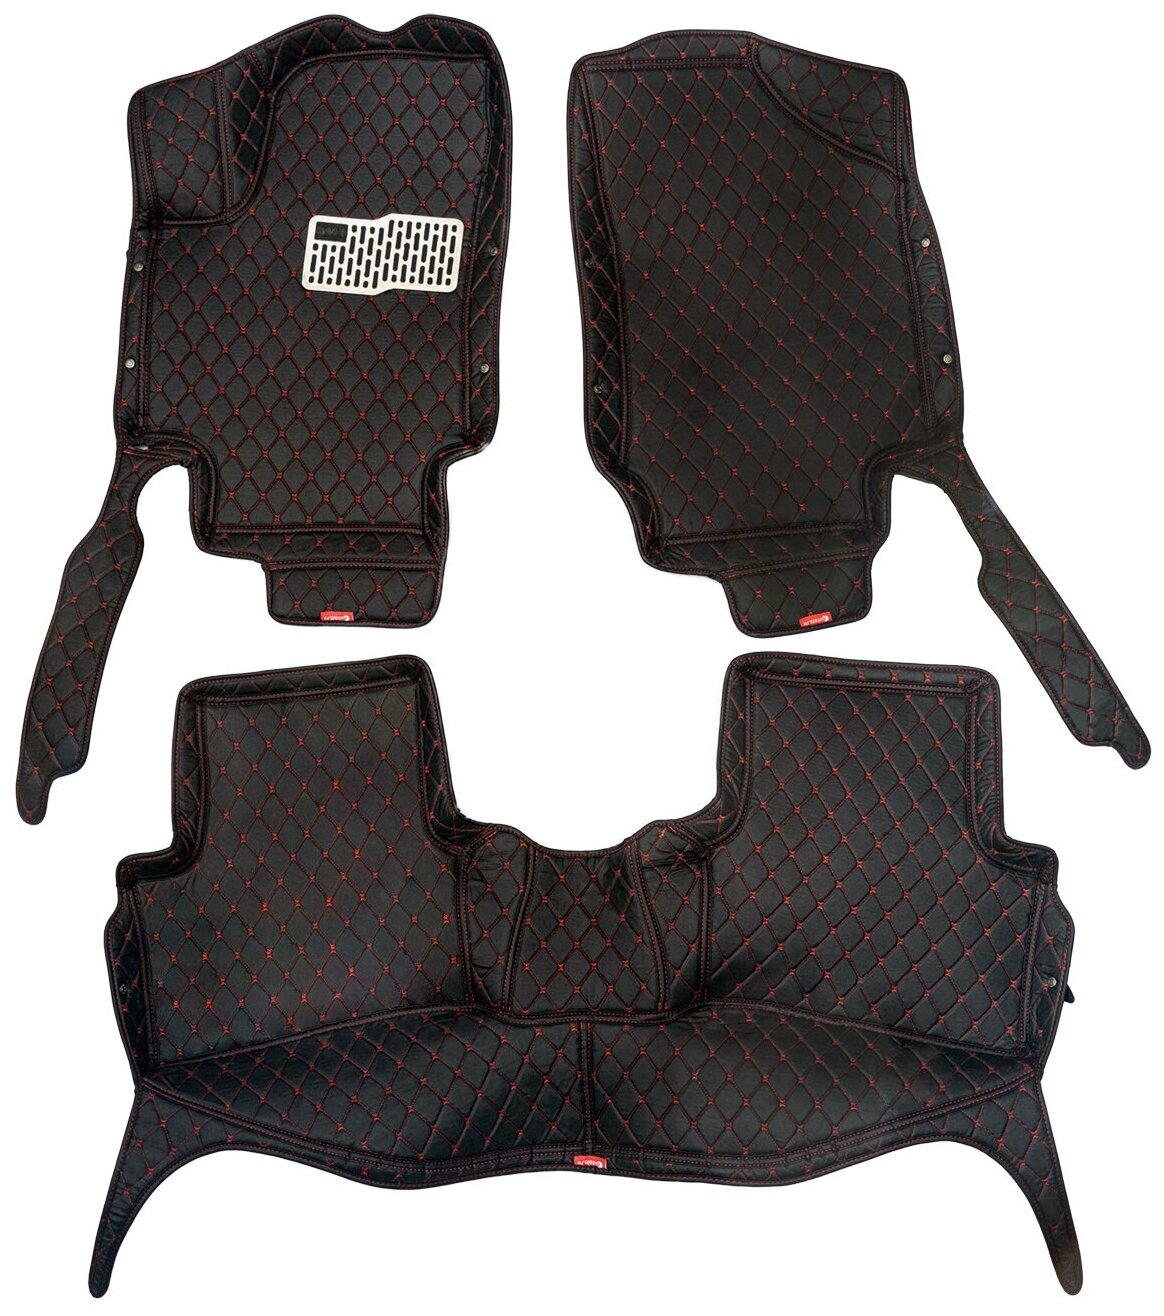 Кожаные 3D коврики Autozs Premium для Cadillac Escalade IV (2014+) черные с красной стежкой / Кадиллак Эскалейд 4 (2014+) 3Д ковры в автомобиль